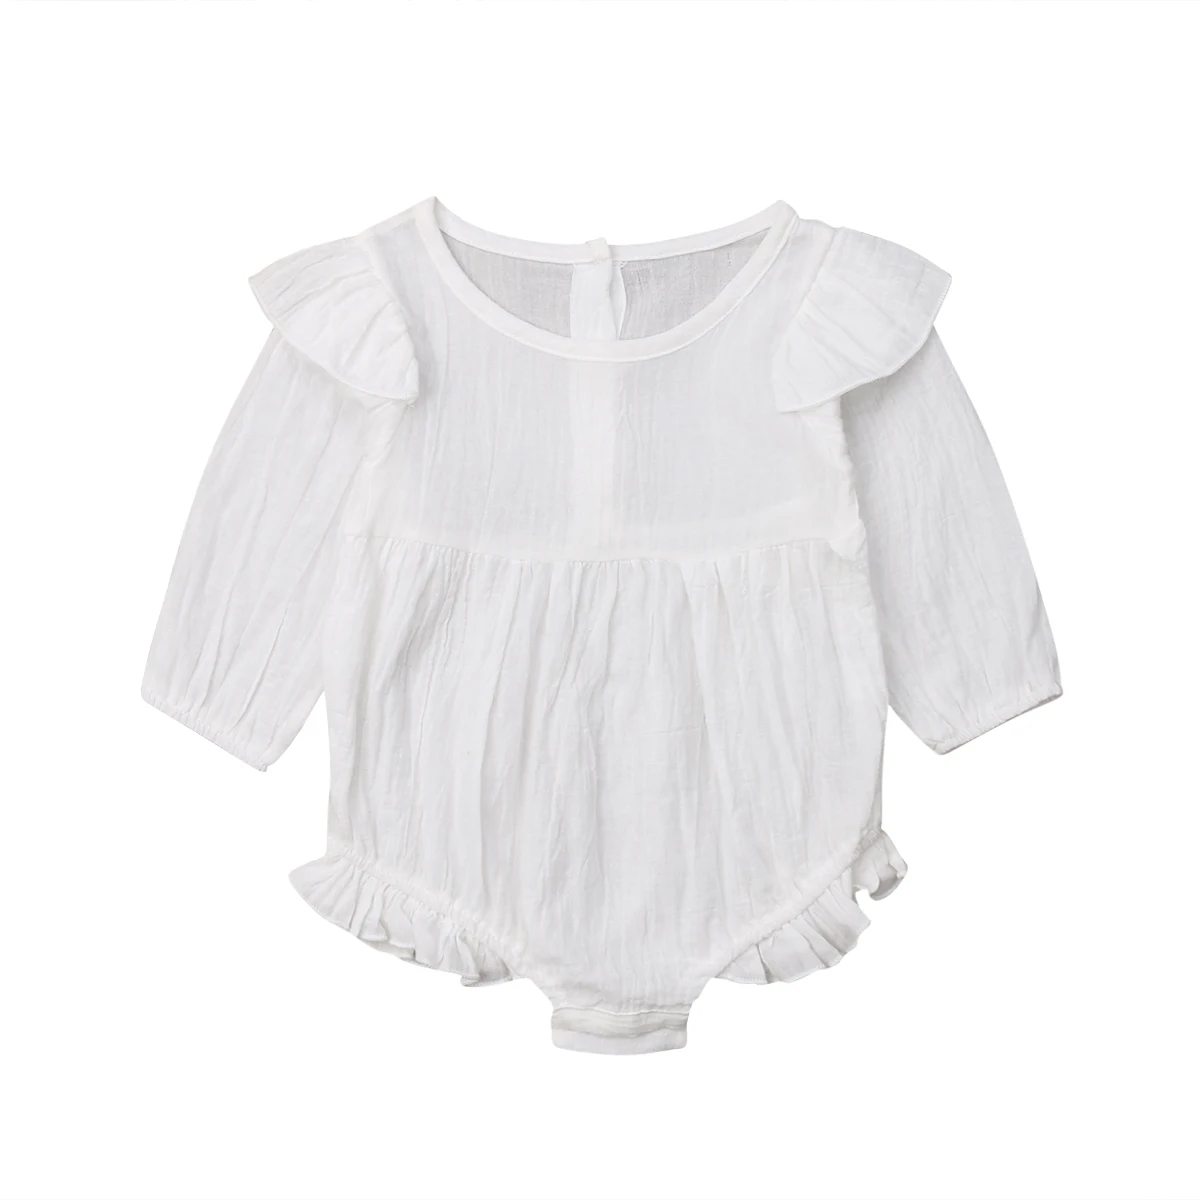 От 0 до 3 лет комбинезоны для новорожденных девочек; винтажный комбинезон с открытыми плечами и длинными рукавами для маленьких девочек; комбинезон; одежда для малышей - Цвет: Белый